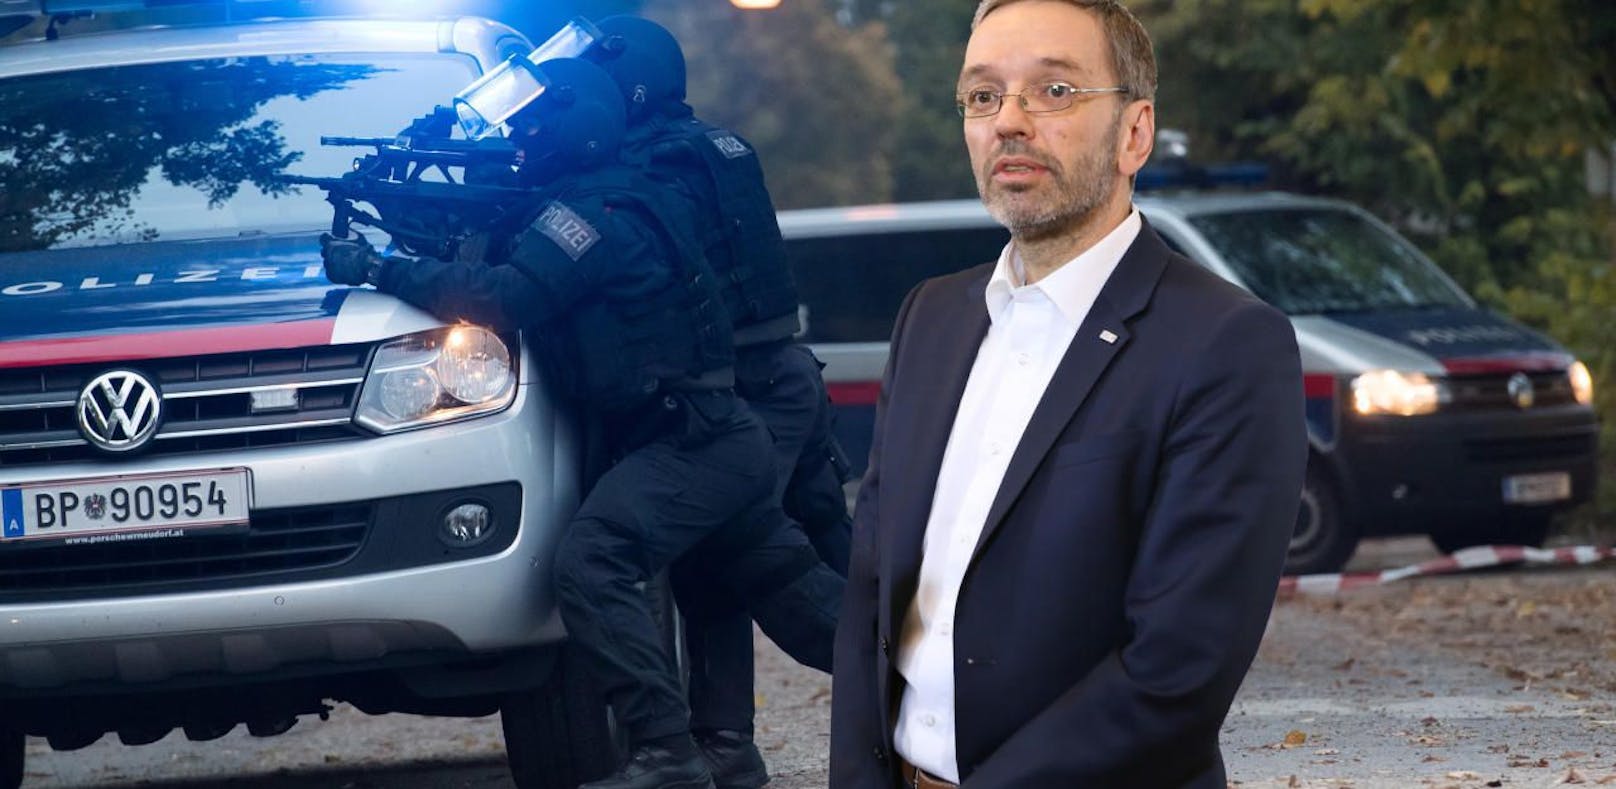 Innenminister Kickl (FPÖ) gibt Tipps für das richtige Verhalten bei Terror-Gefahr